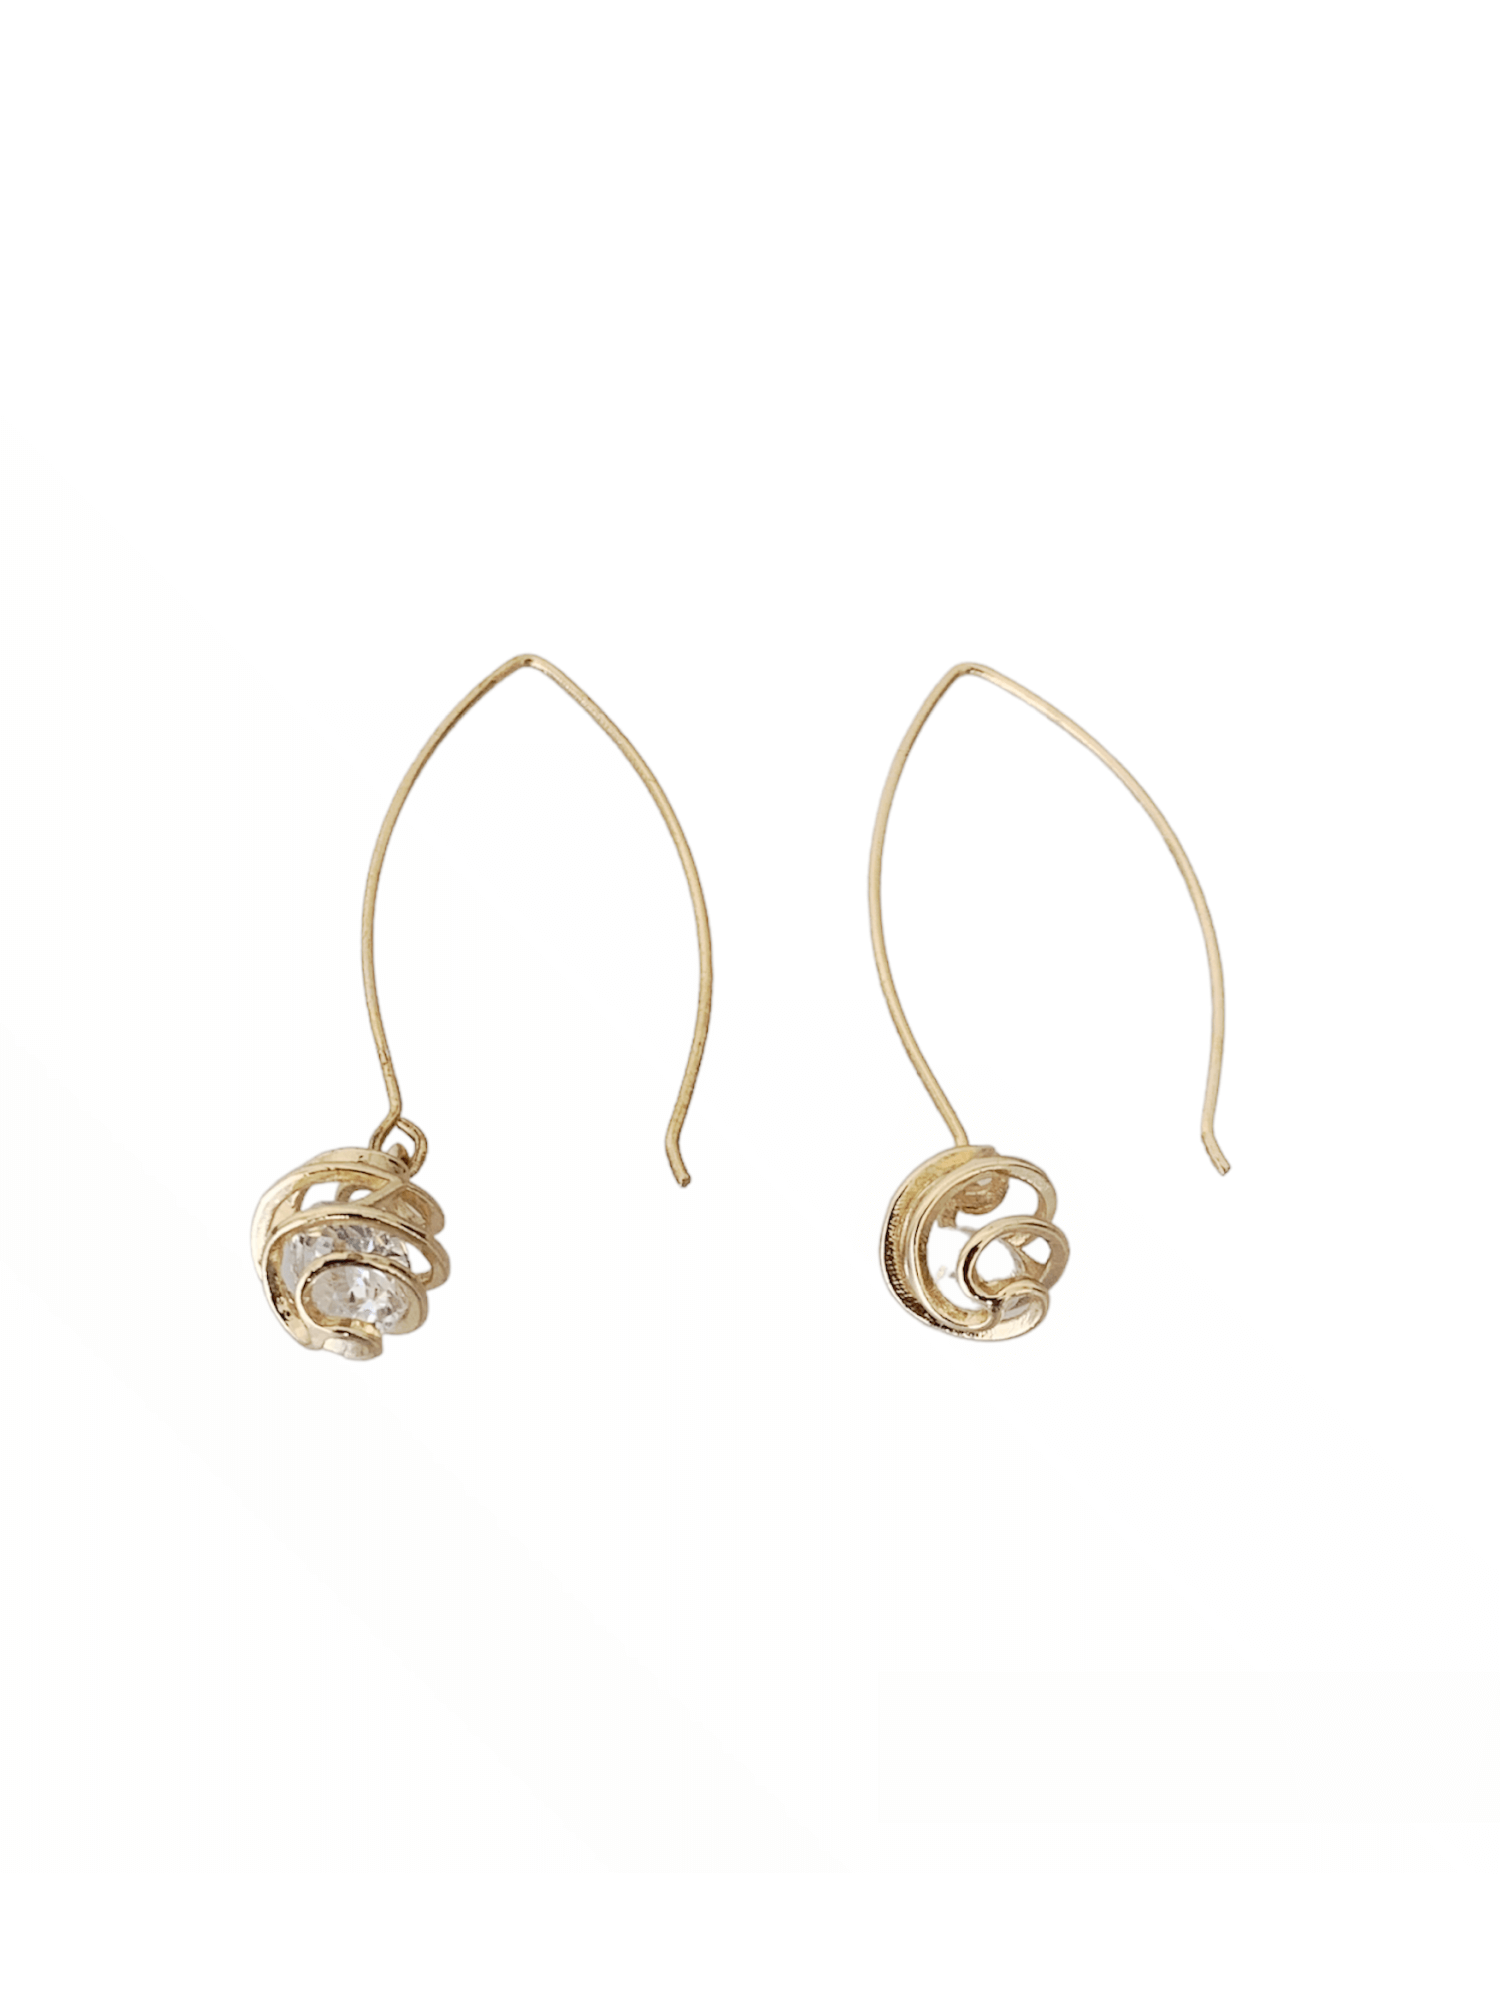 Dainty Spiral Hoop Earrings . Silver Mandala . Bohemian Hippie Chic Jewelry  . Infinity Earrings . Lace Earrings . FREE SHIPPING CANADA - Etsy Norway